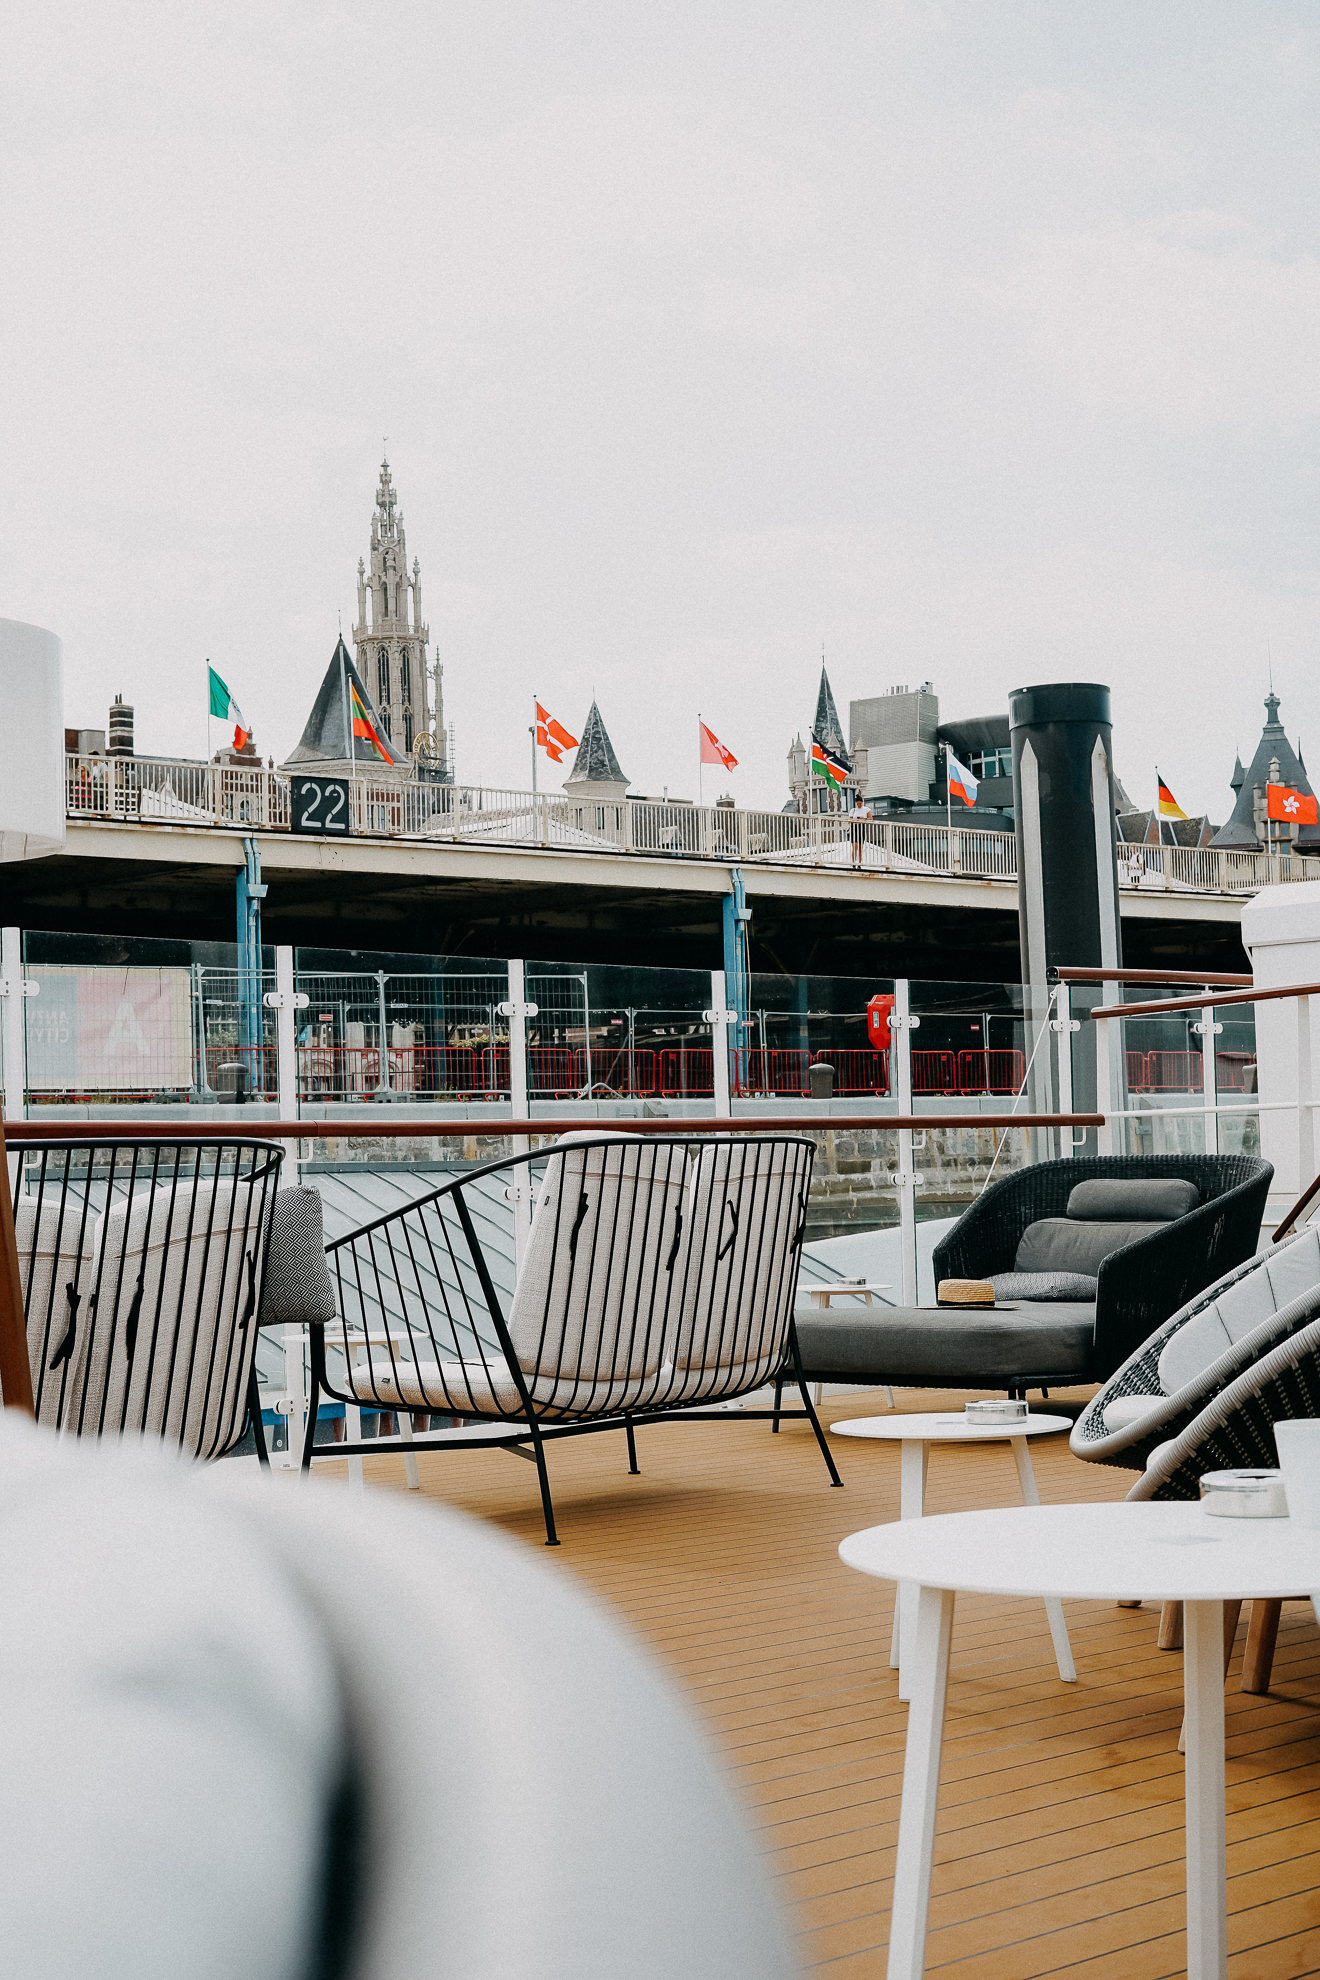 A-ROSA SENA Flusskreuzfahrt Rhein Lounge Sitzecke Deck Reiseblog Kreuzfahrten Europa